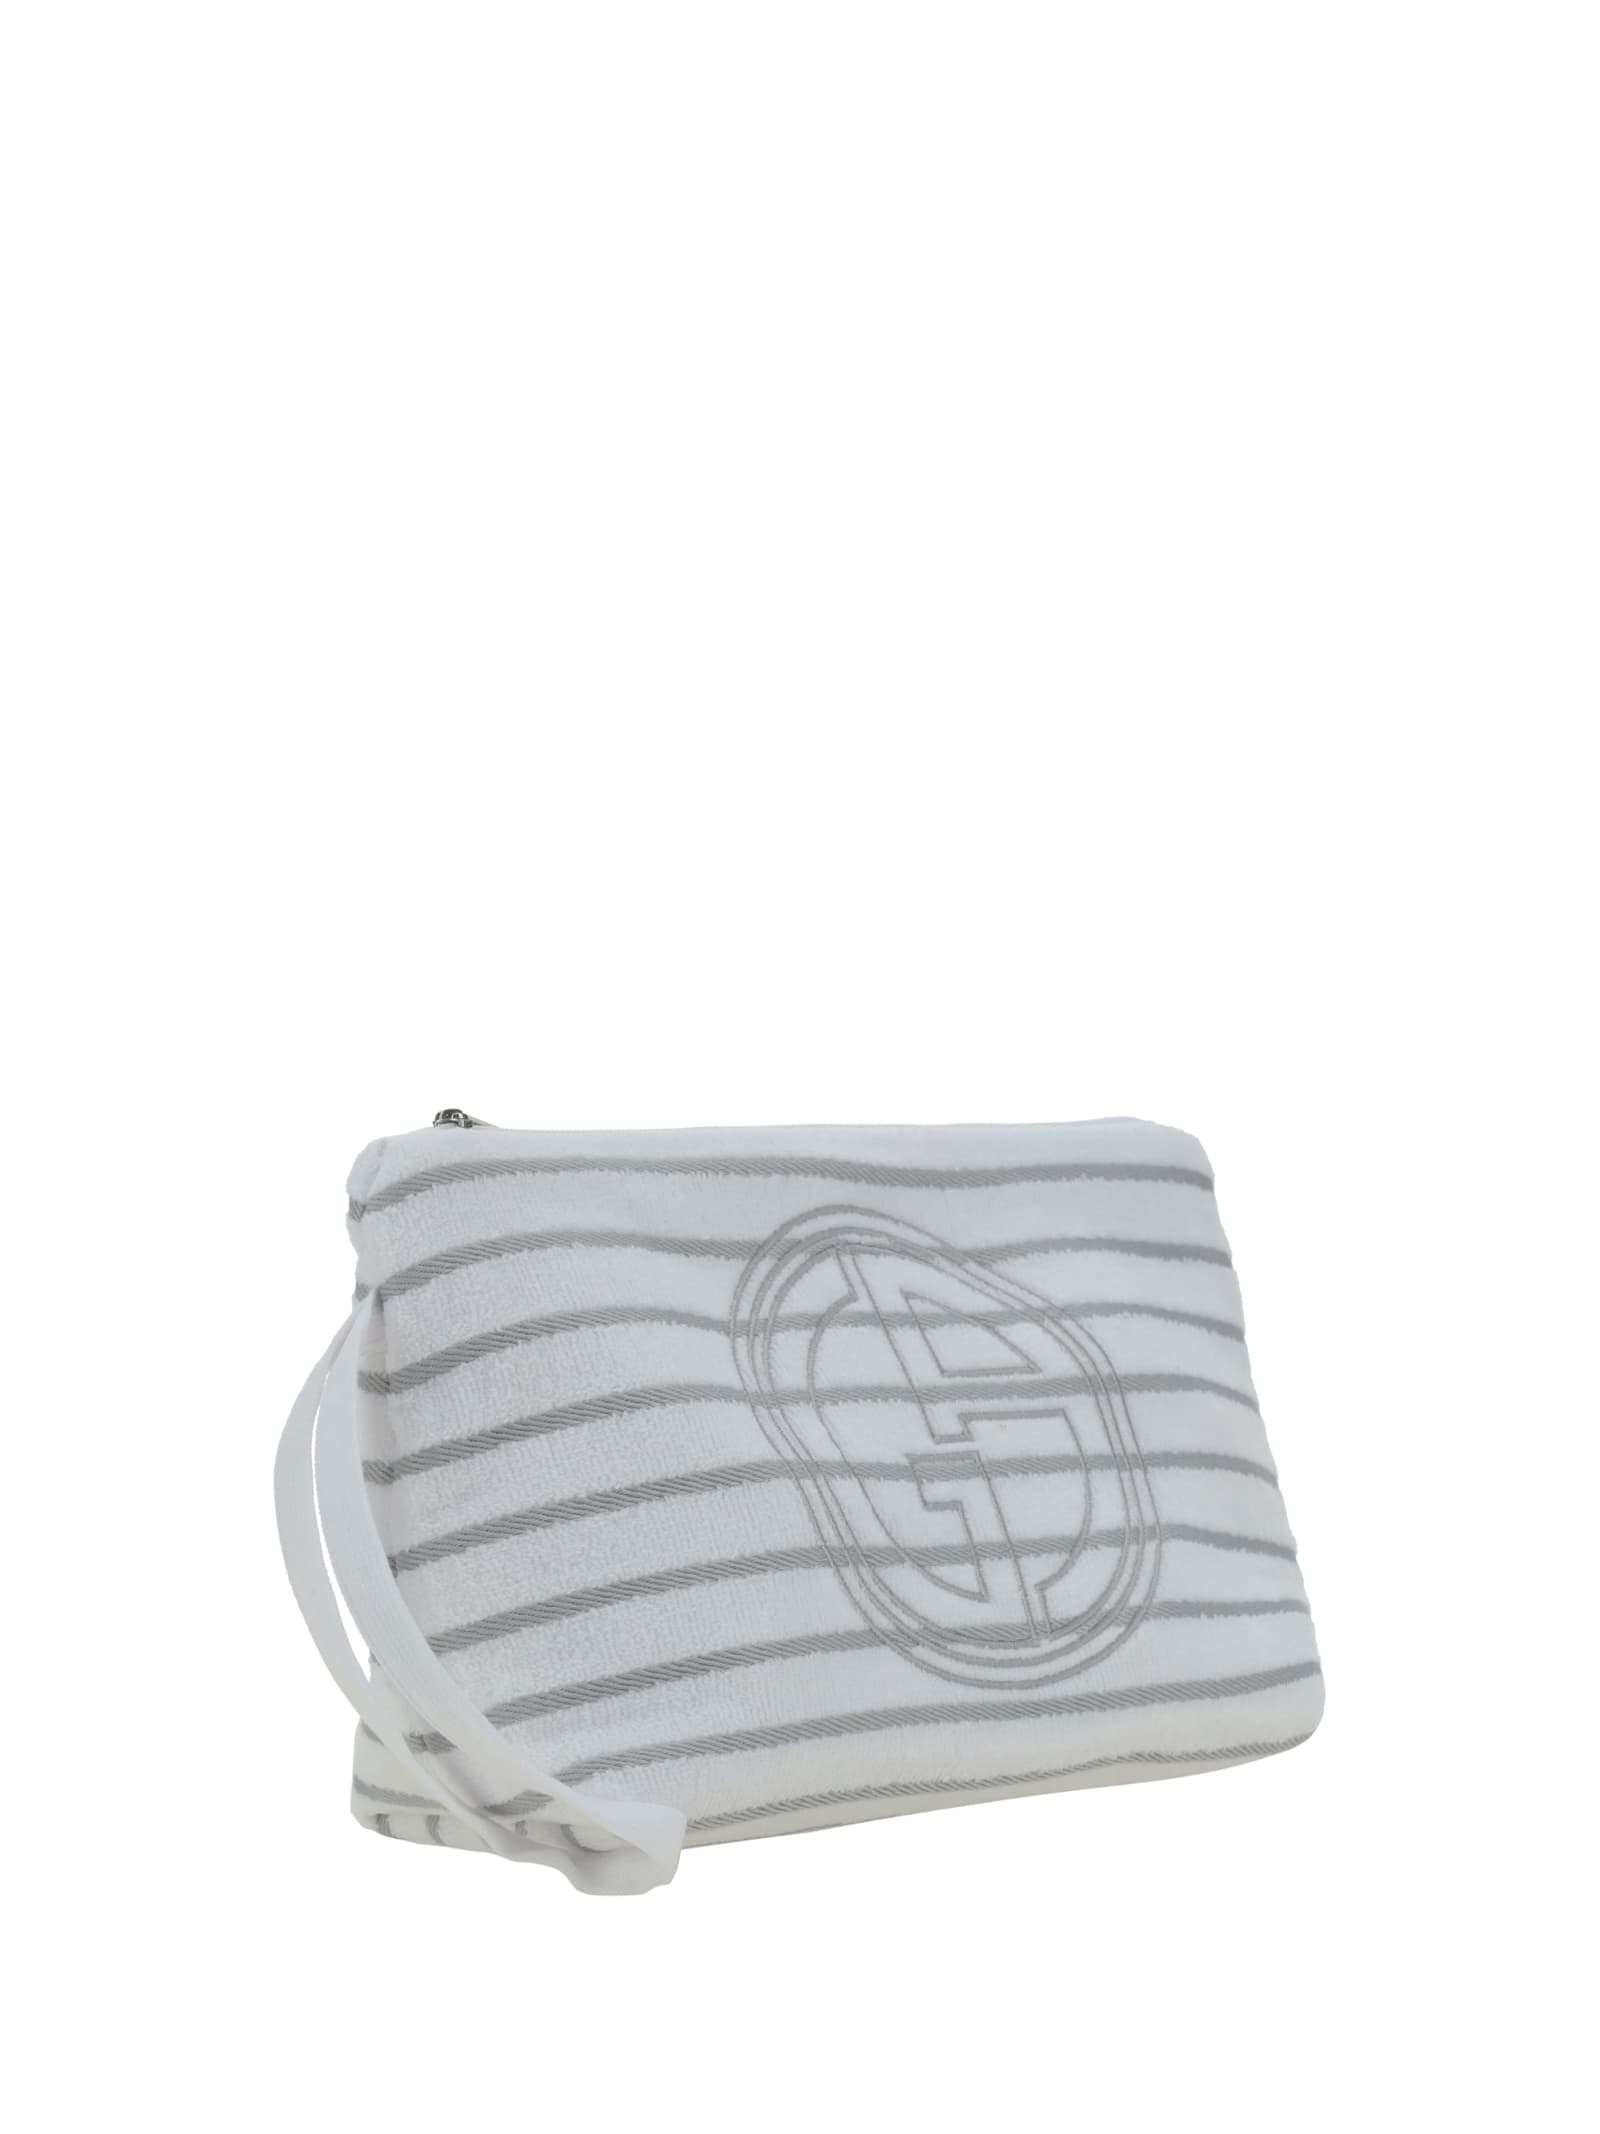 Shop Giorgio Armani Clutch Bag In Brilliant White